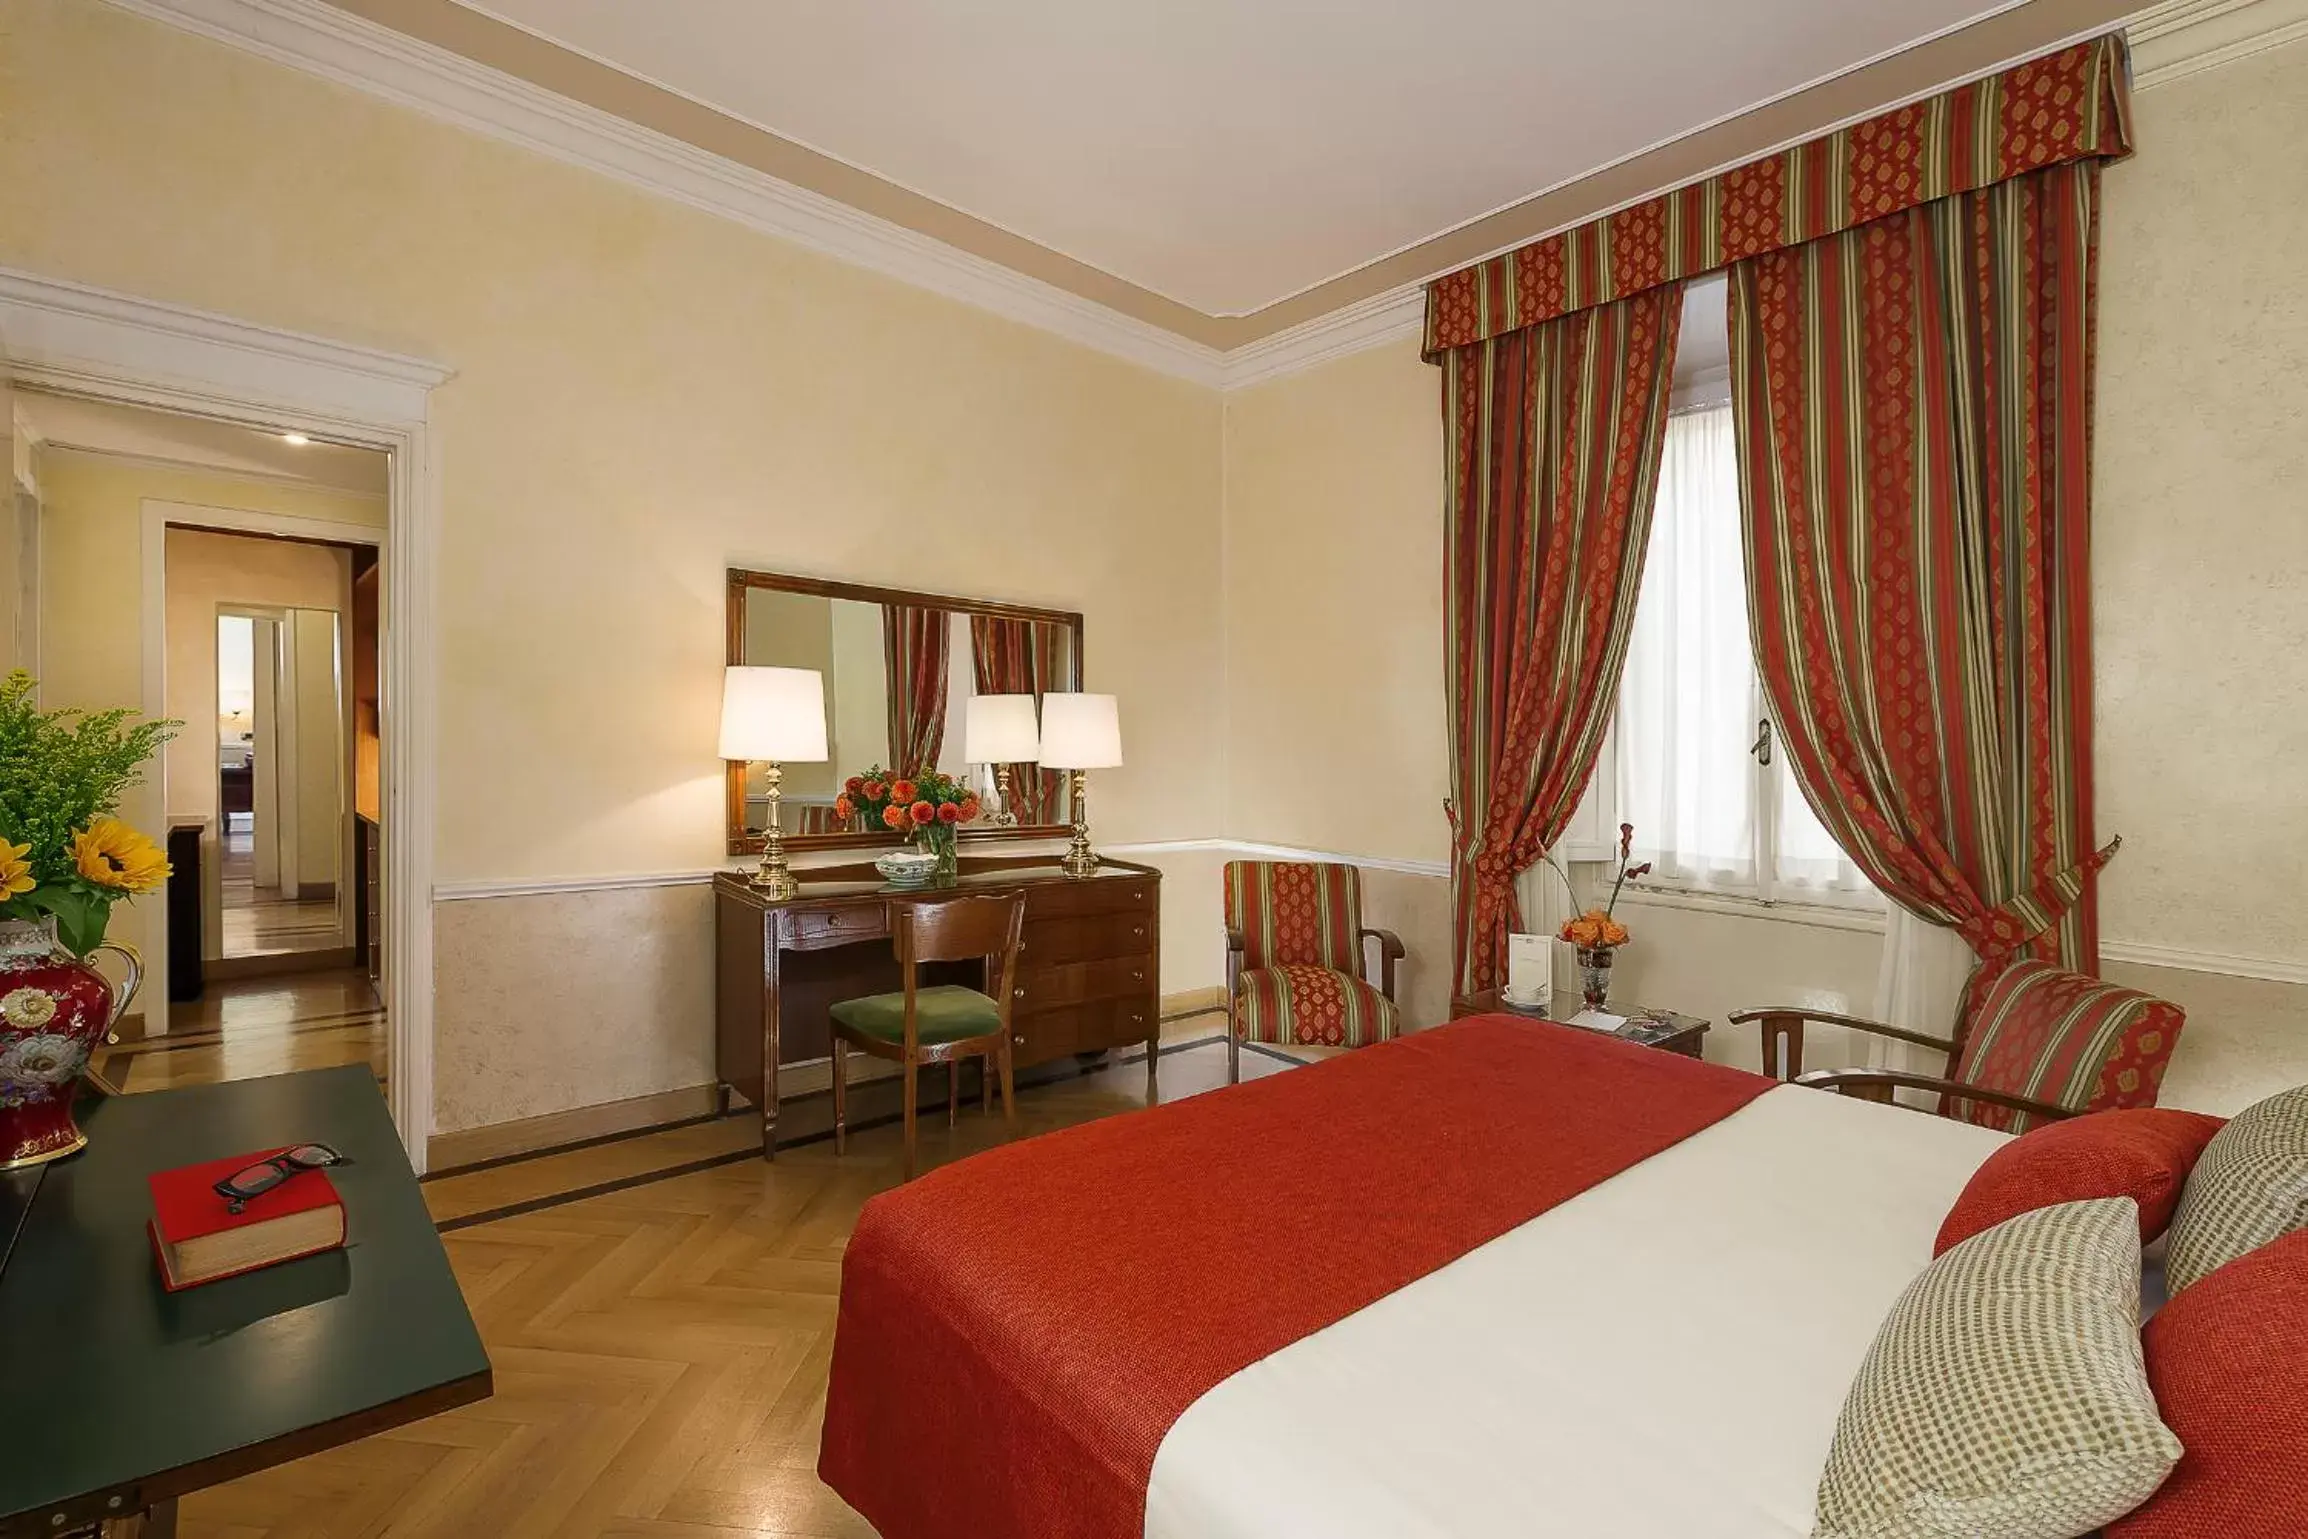 Photo of the whole room in Bettoja Hotel Massimo d'Azeglio